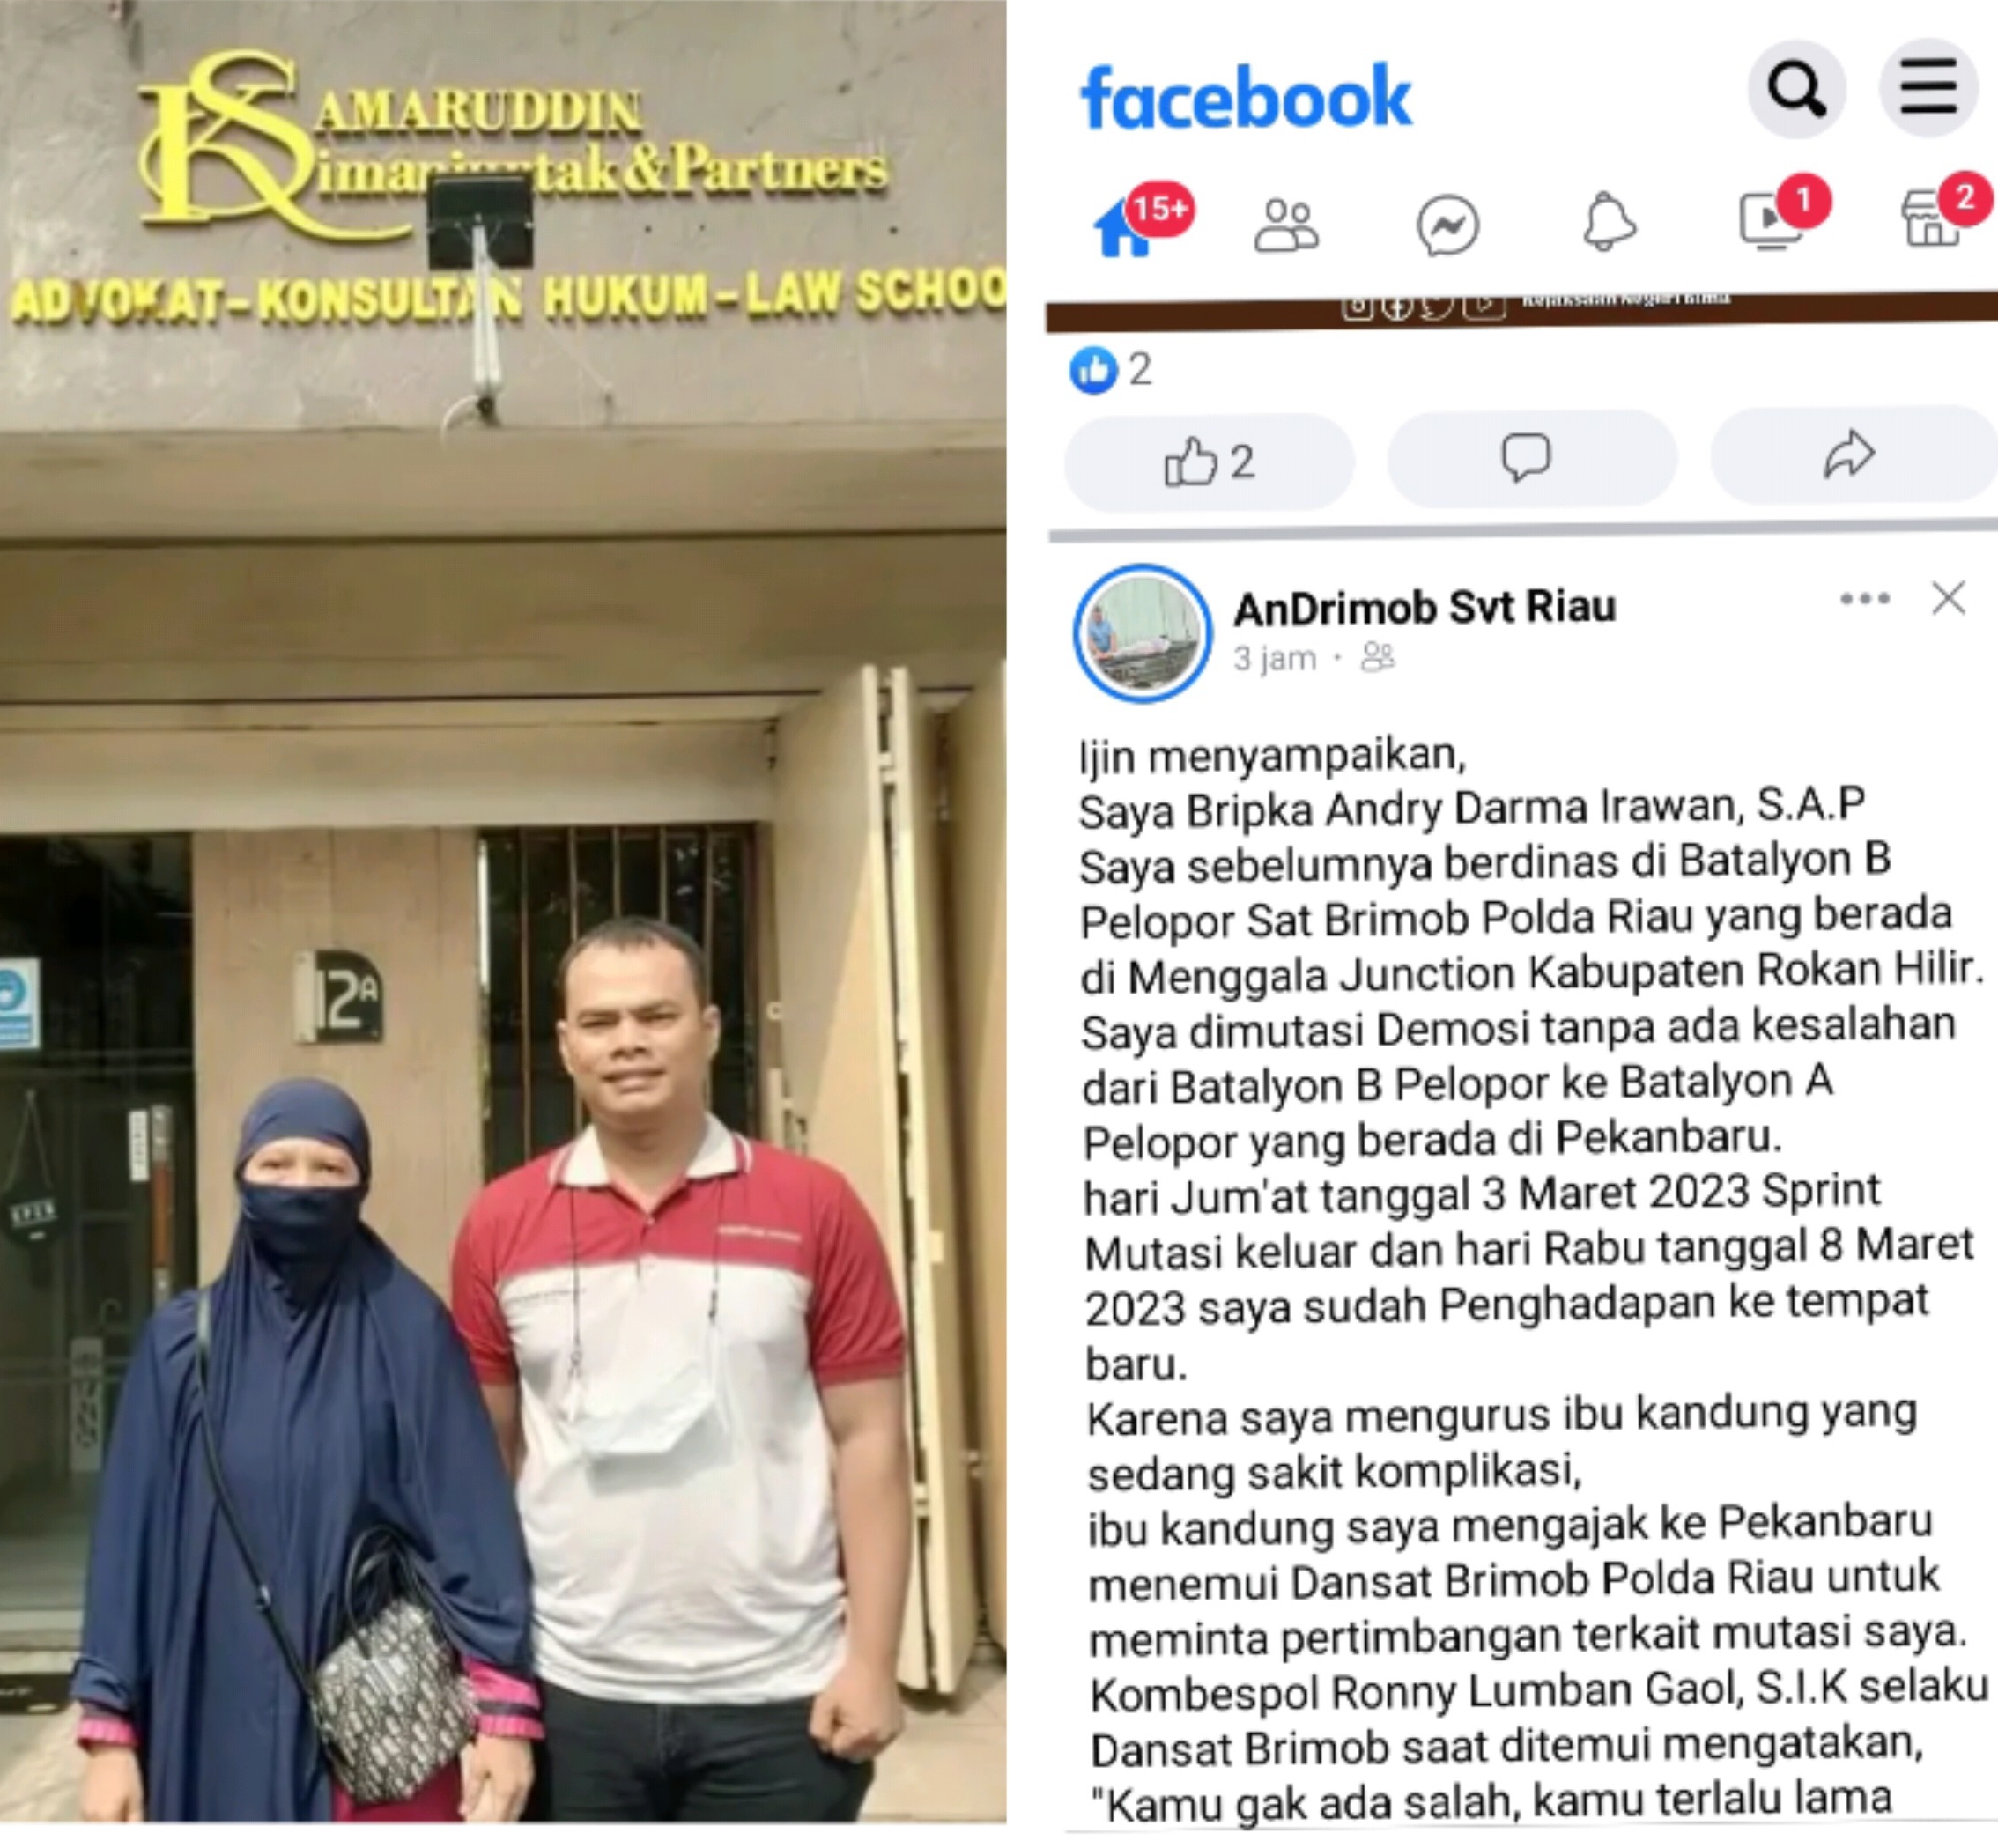 Viral...Personil Sat Brimob Menggala Junction Polda Riau Minta Keadilan Terkait Mutasi Demosi